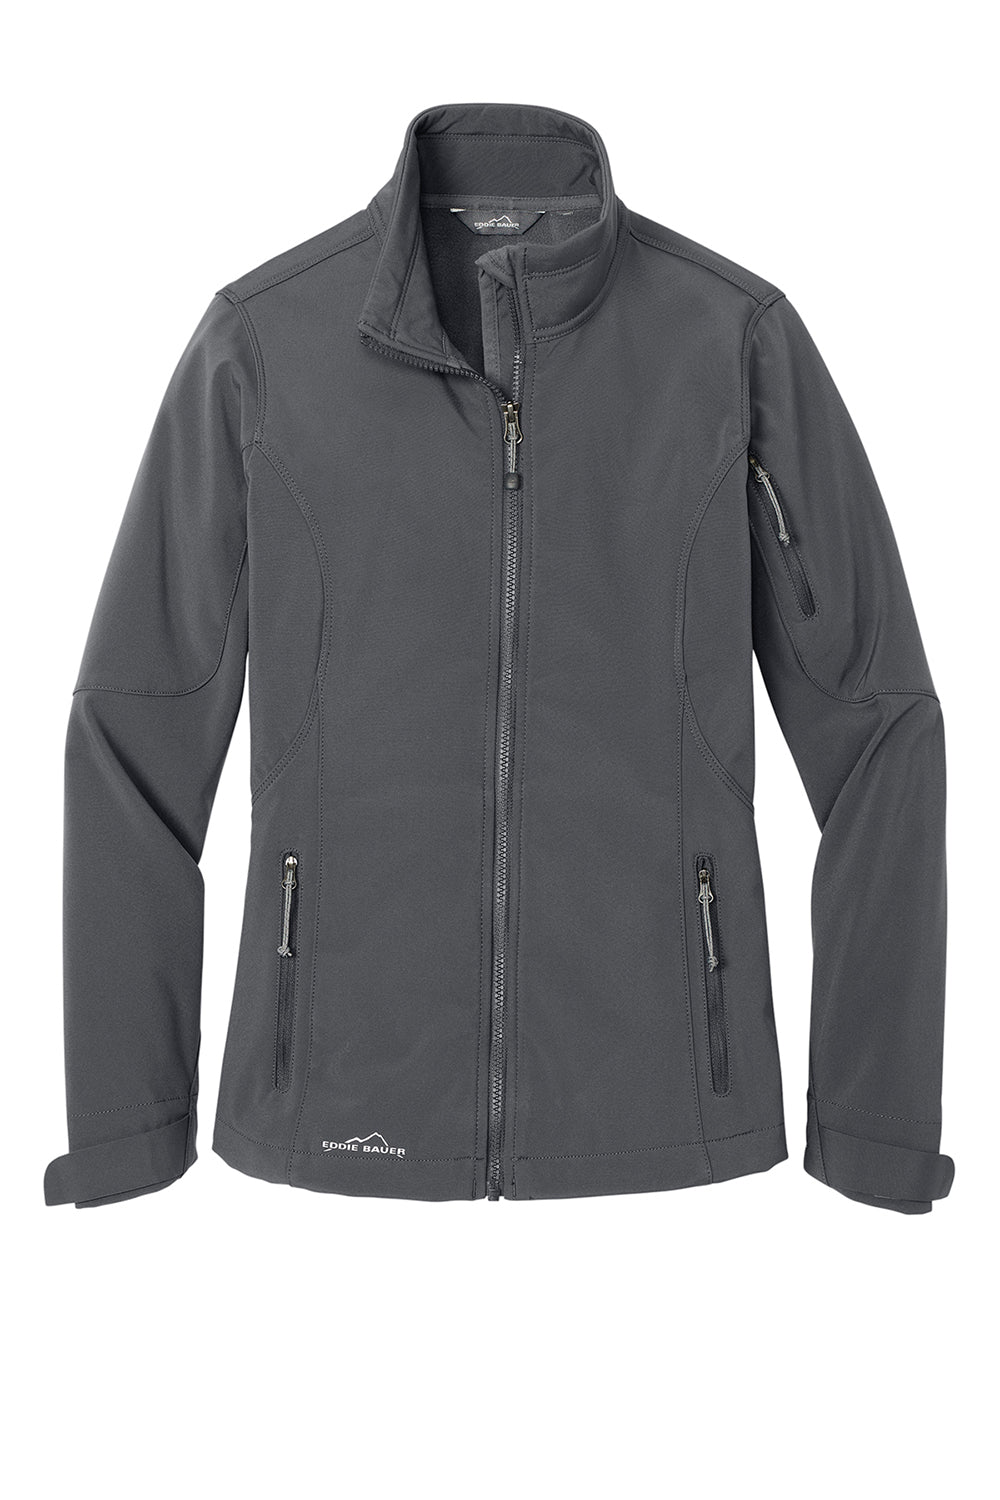 Eddie Bauer EB531 Womens Water Resistant Full Zip Jacket Steel Grey Flat Front